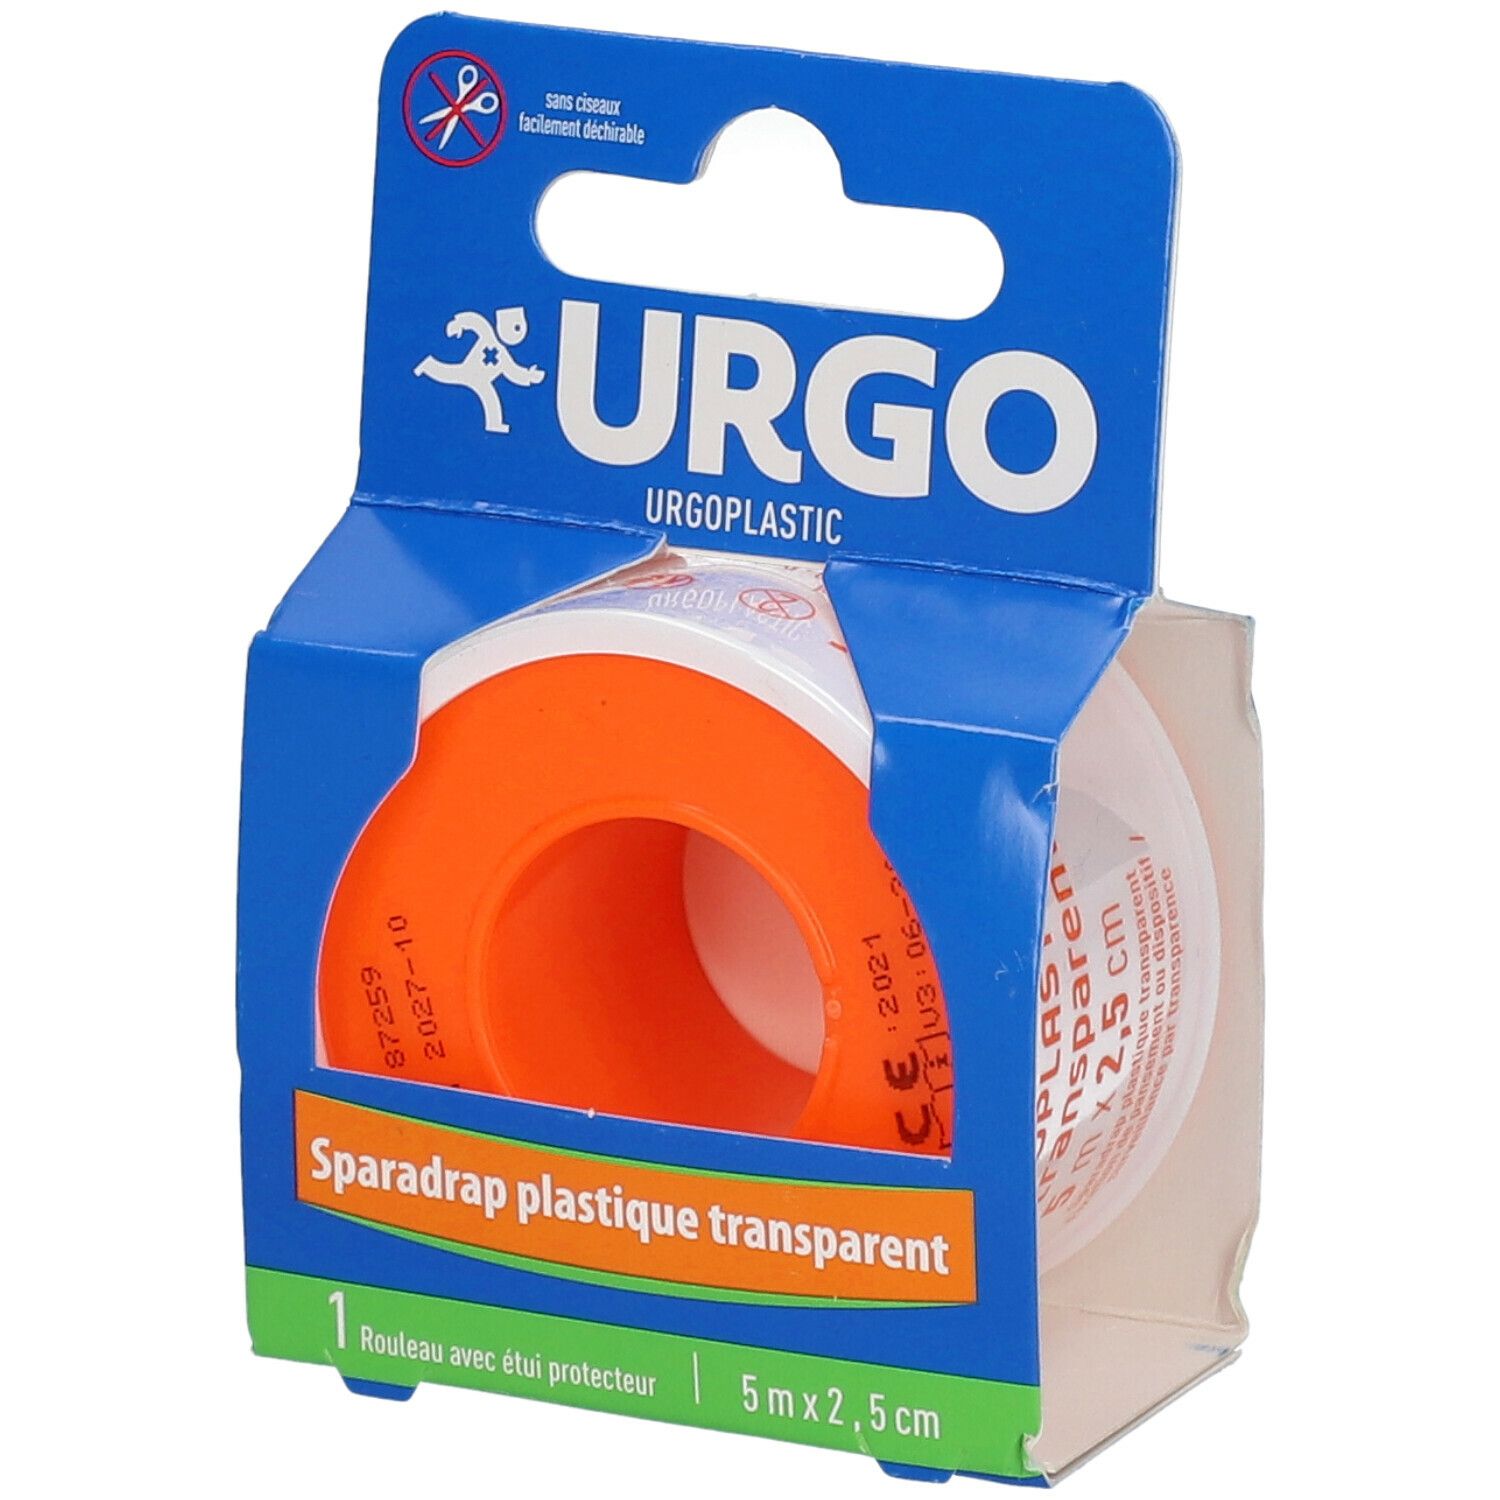 Urgo Urgoplastic Film transparent Sparadrap Discret 5 m x 2,5 cm